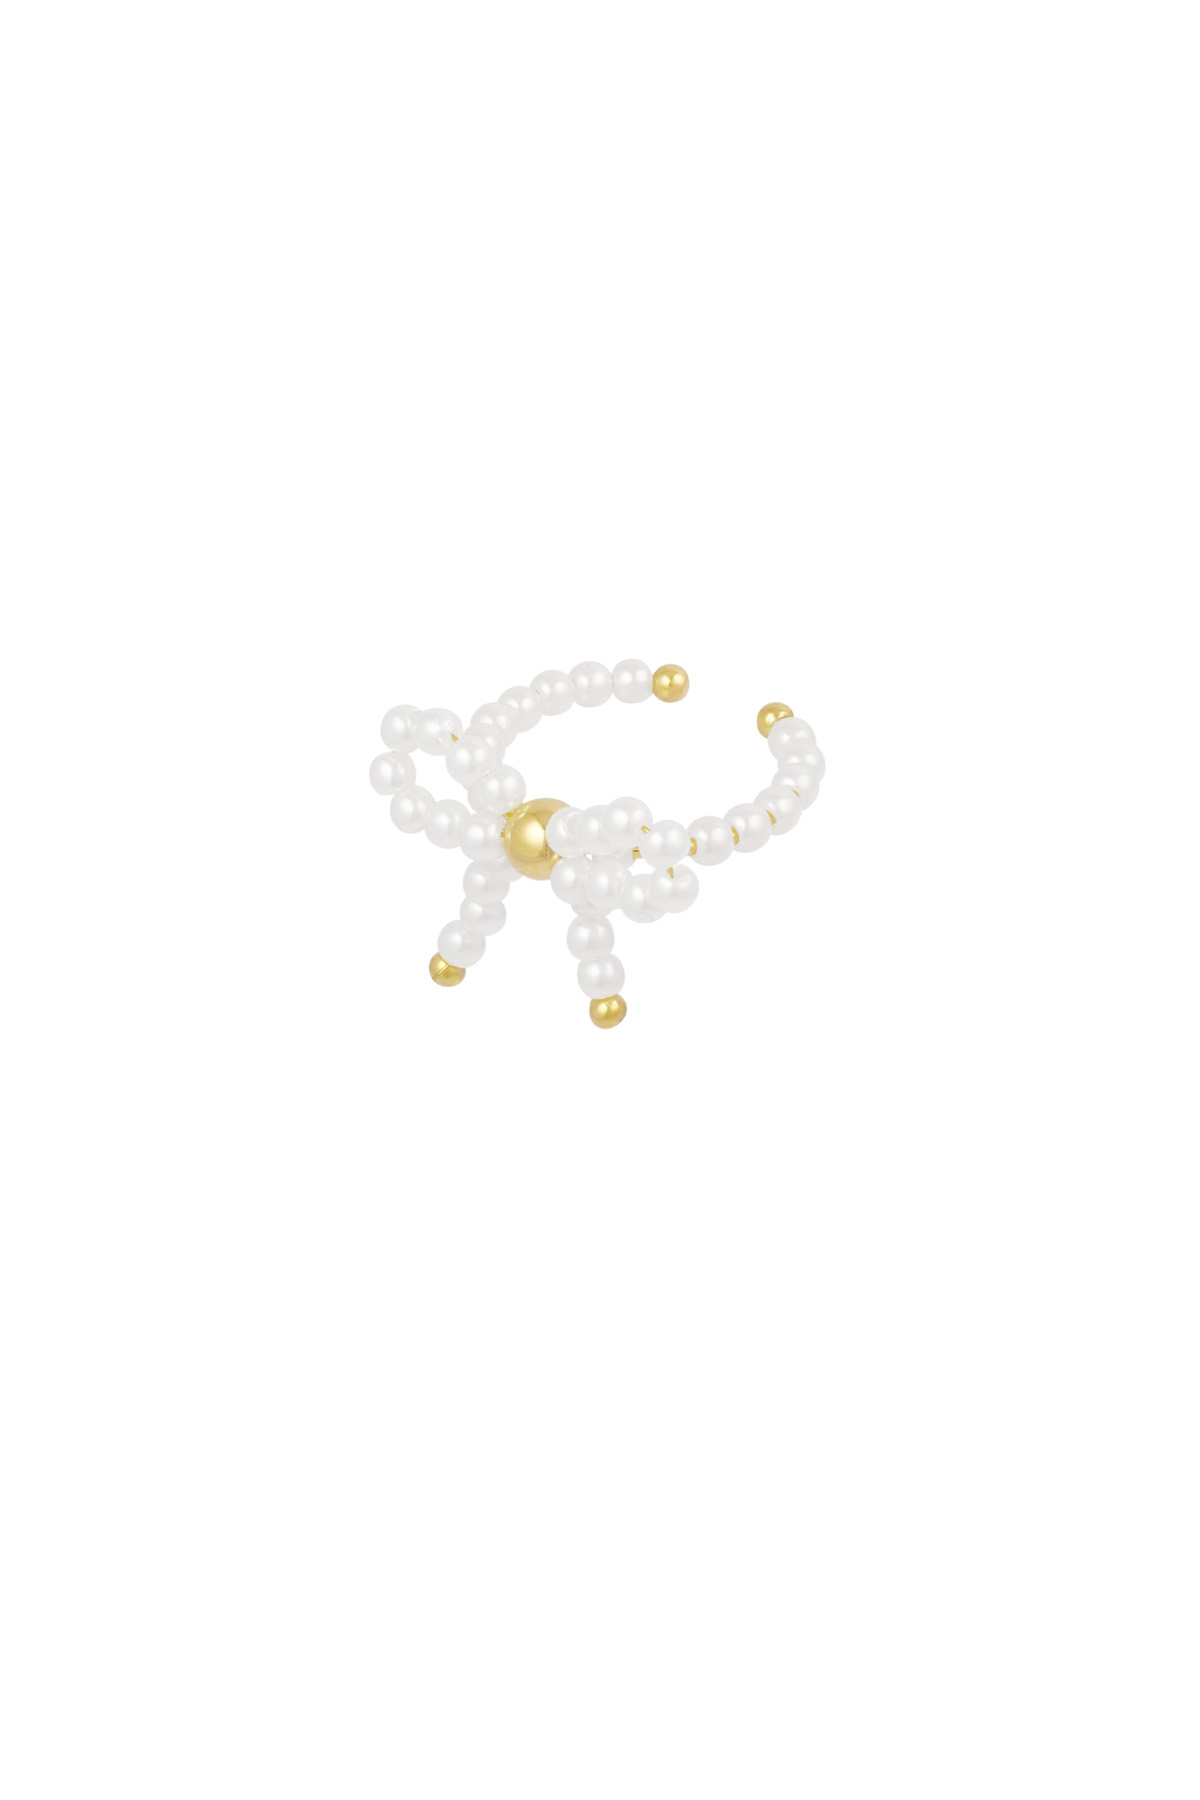 Bague noeud perle - or blanc  h5 Image4